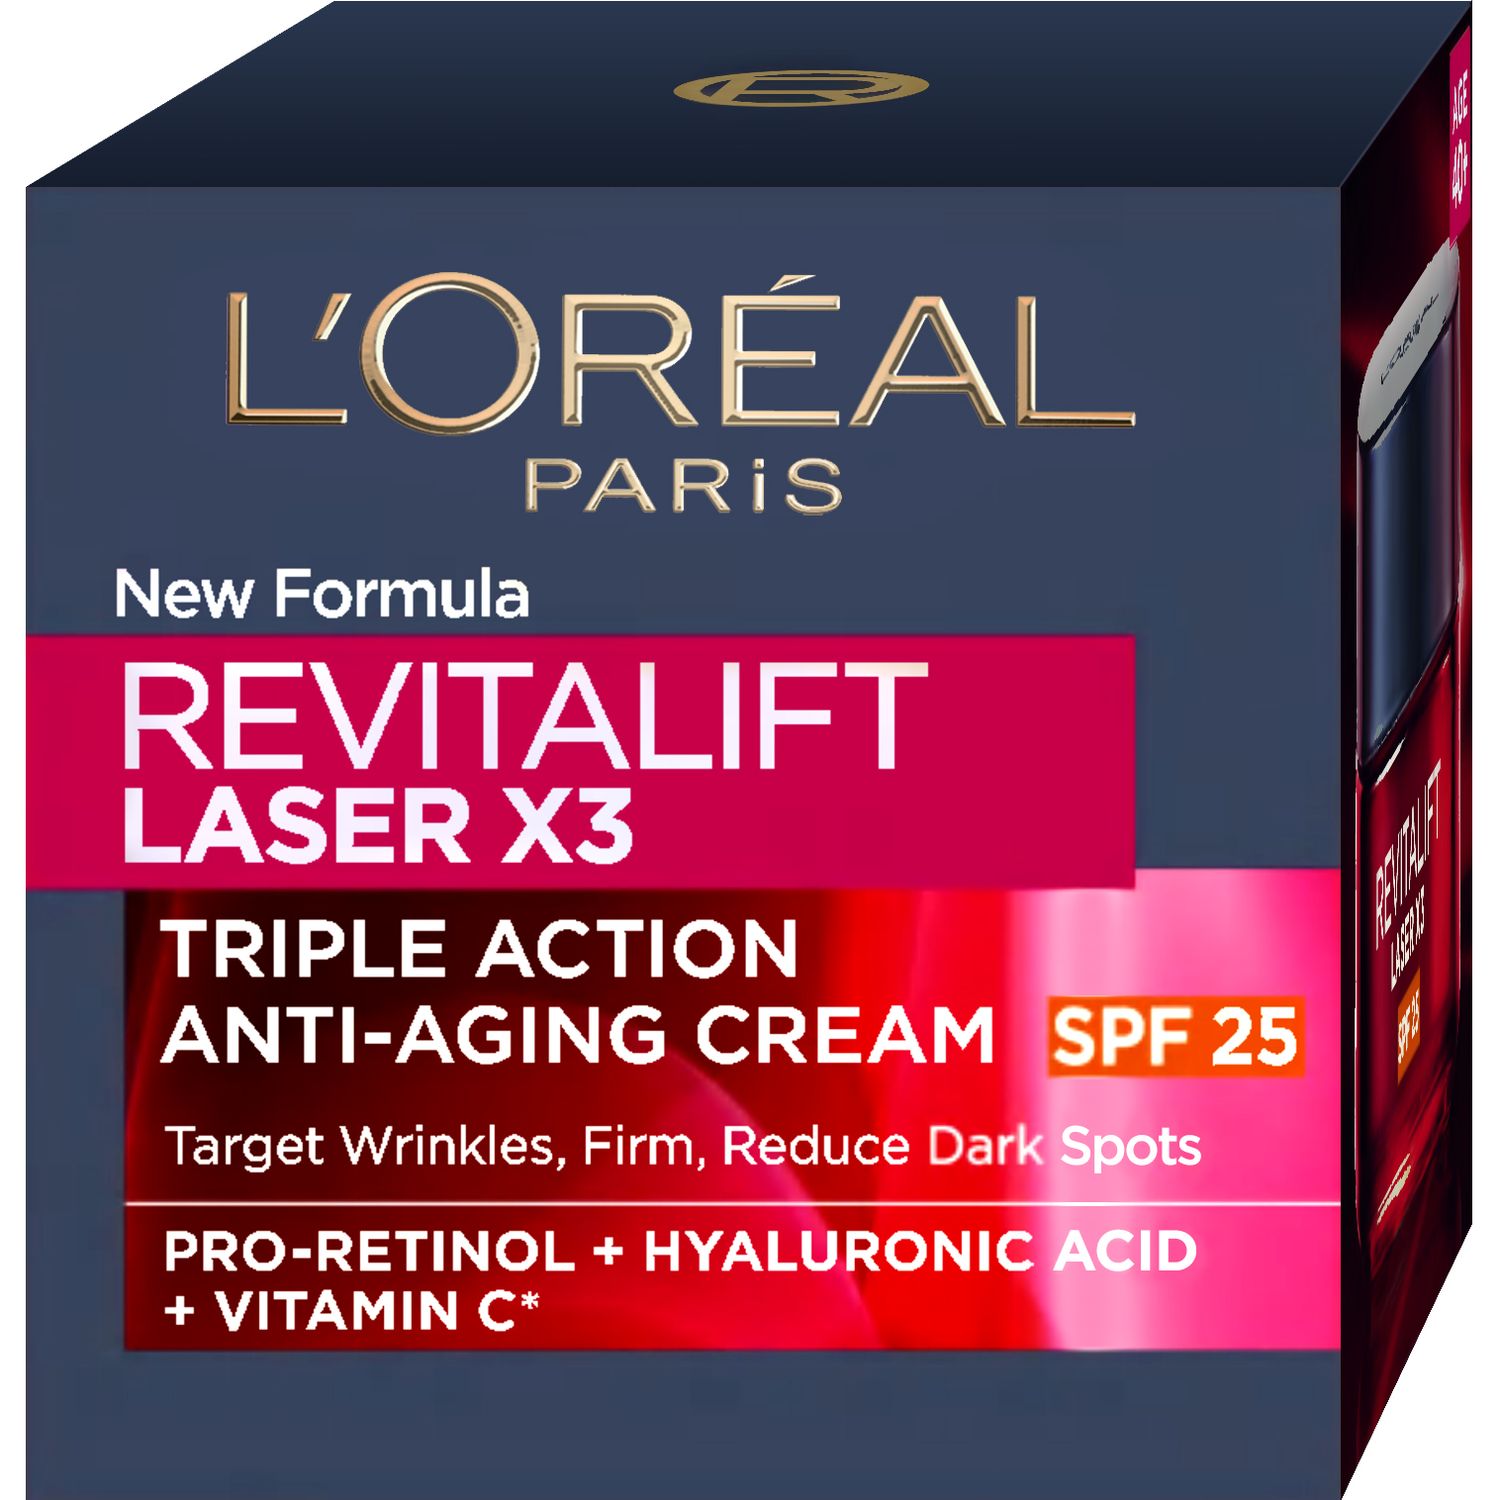 Денний регенеруючий крем для обличчя L'Oreal Paris Revitalift Laser х3 SPF 25, 50 мл (A9247102) - фото 2